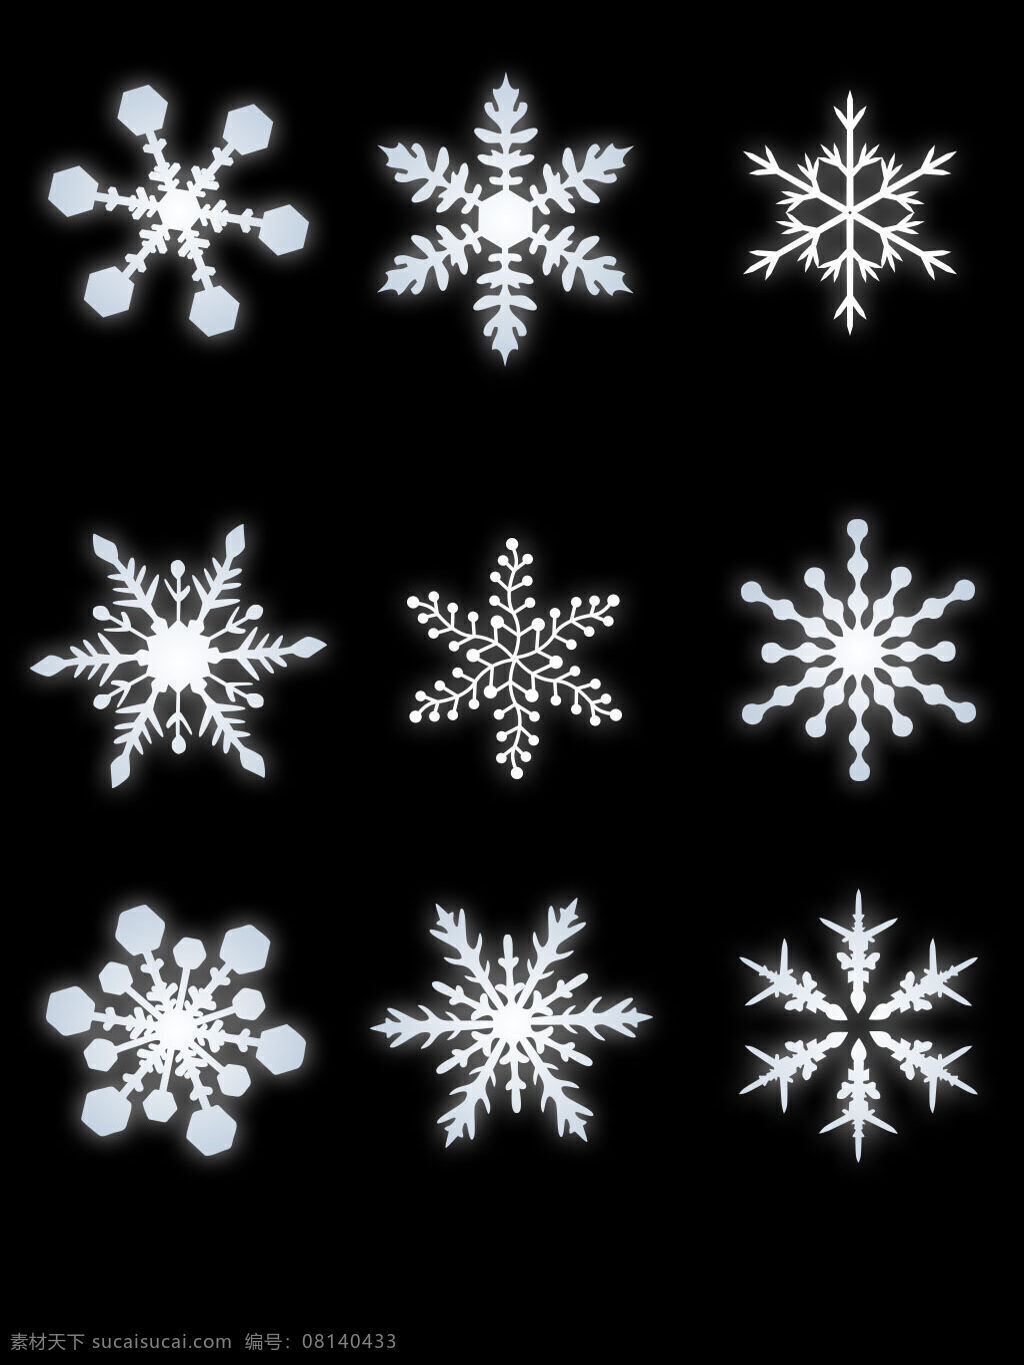 冬天 元素 白色 雪花 矢量 装饰 图案 集合 白色雪花 冬日主题 亮晶晶 雪花素材 雪花图案 雪花元素 雪花装饰